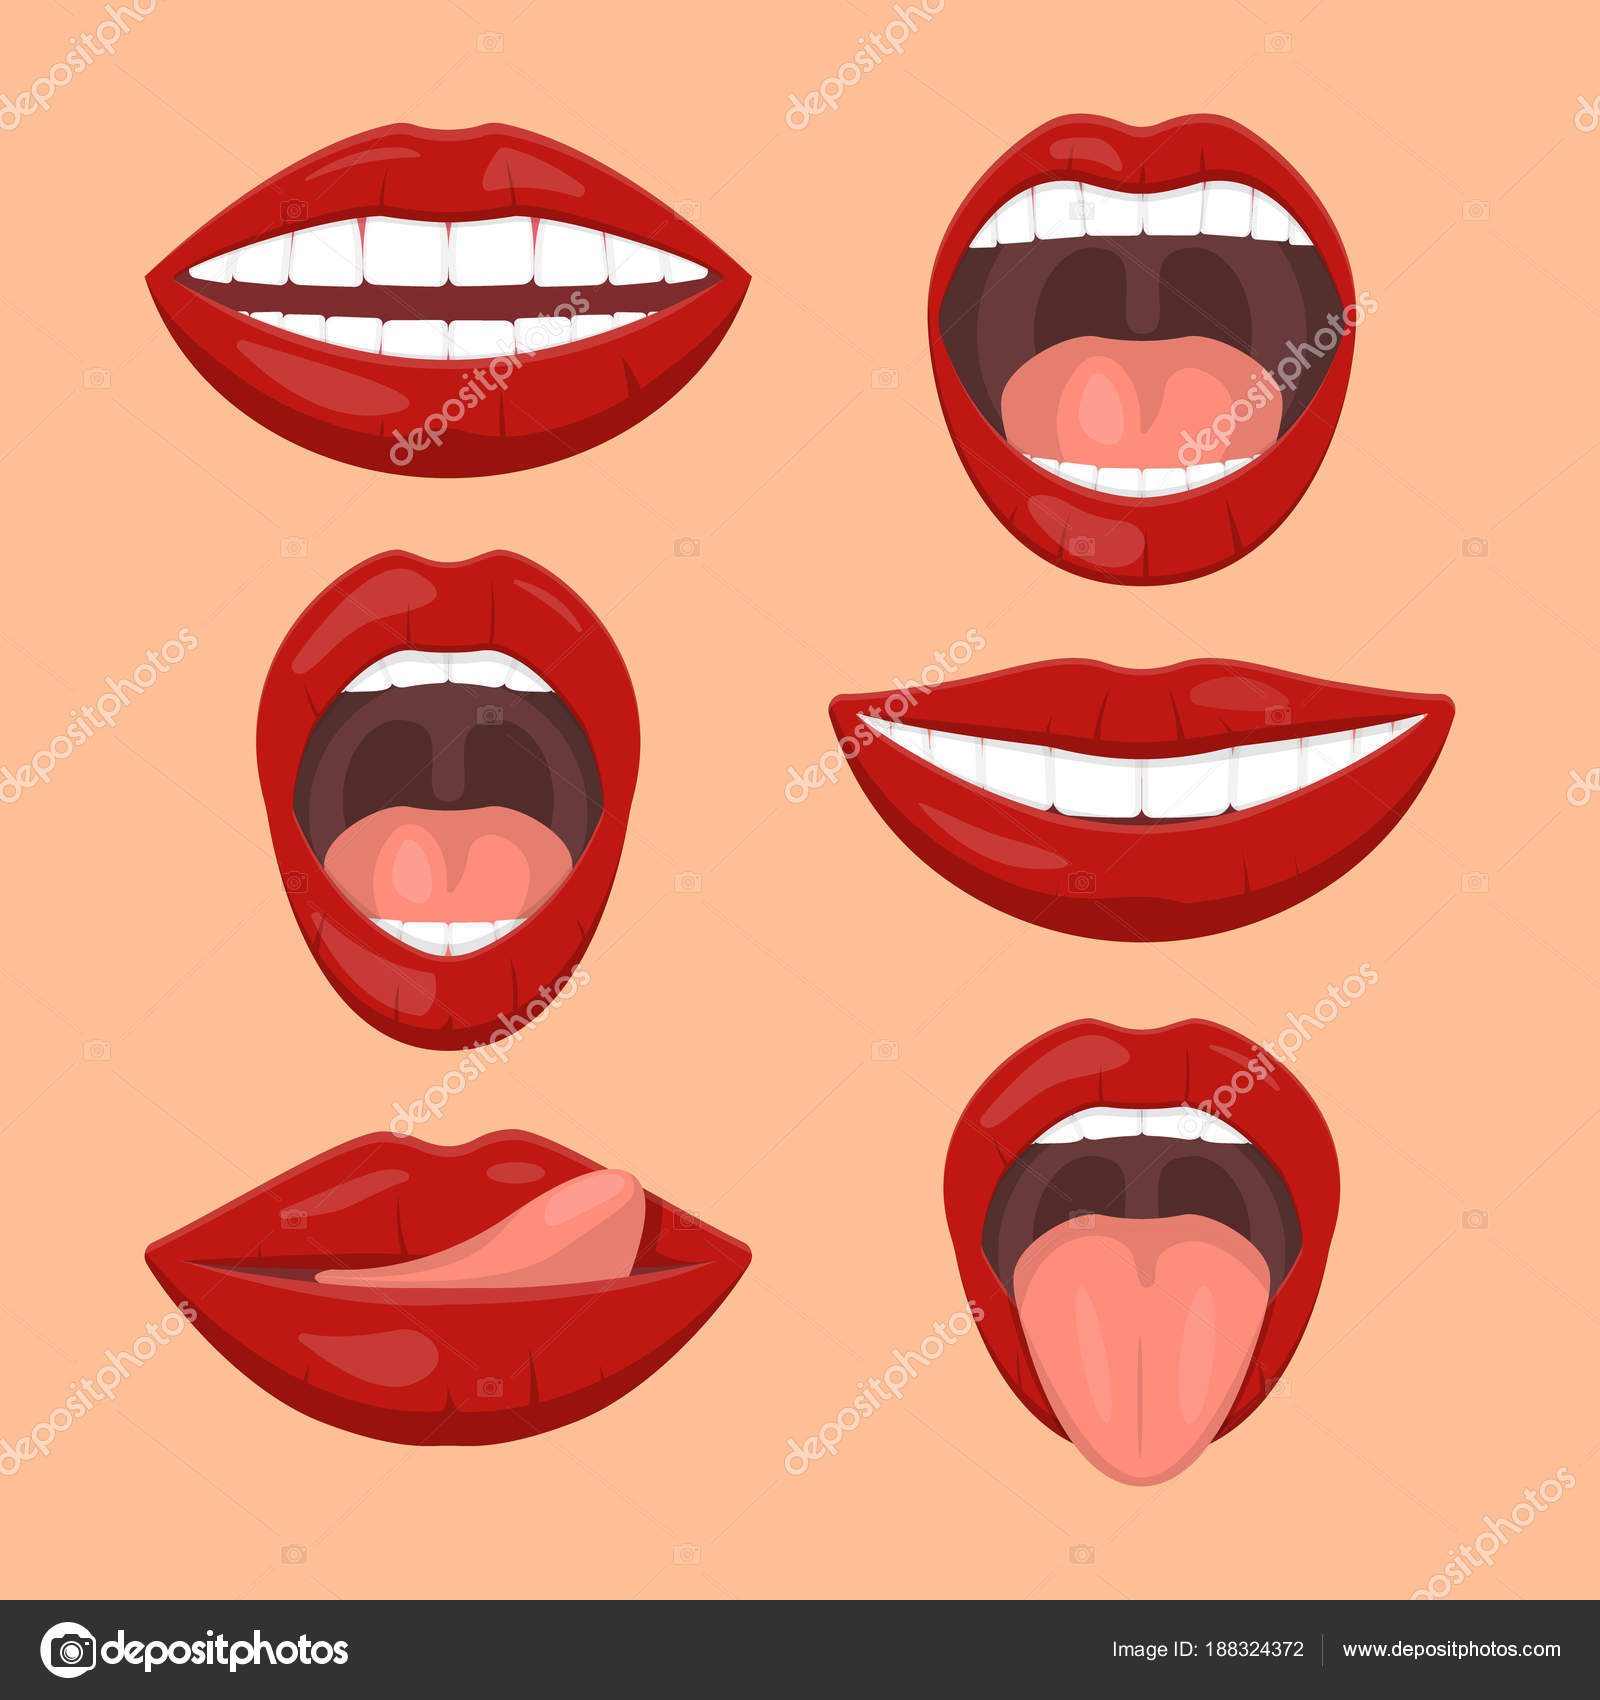 Ilustração de uma boca, lábios estilo anime, boca aberta estilo